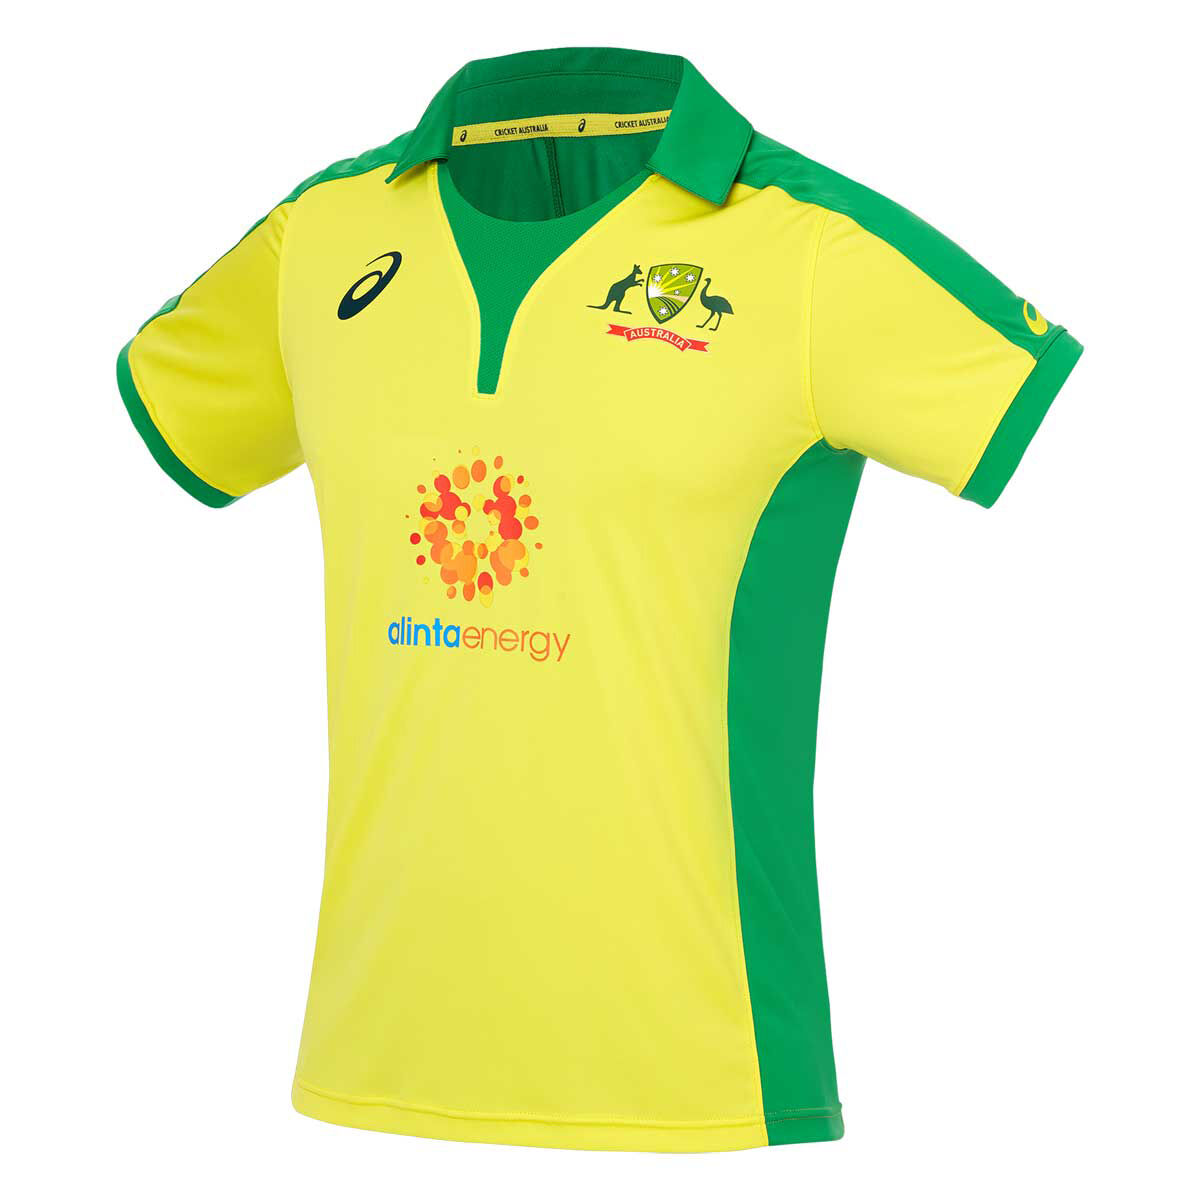 australian cricket jersey buy online